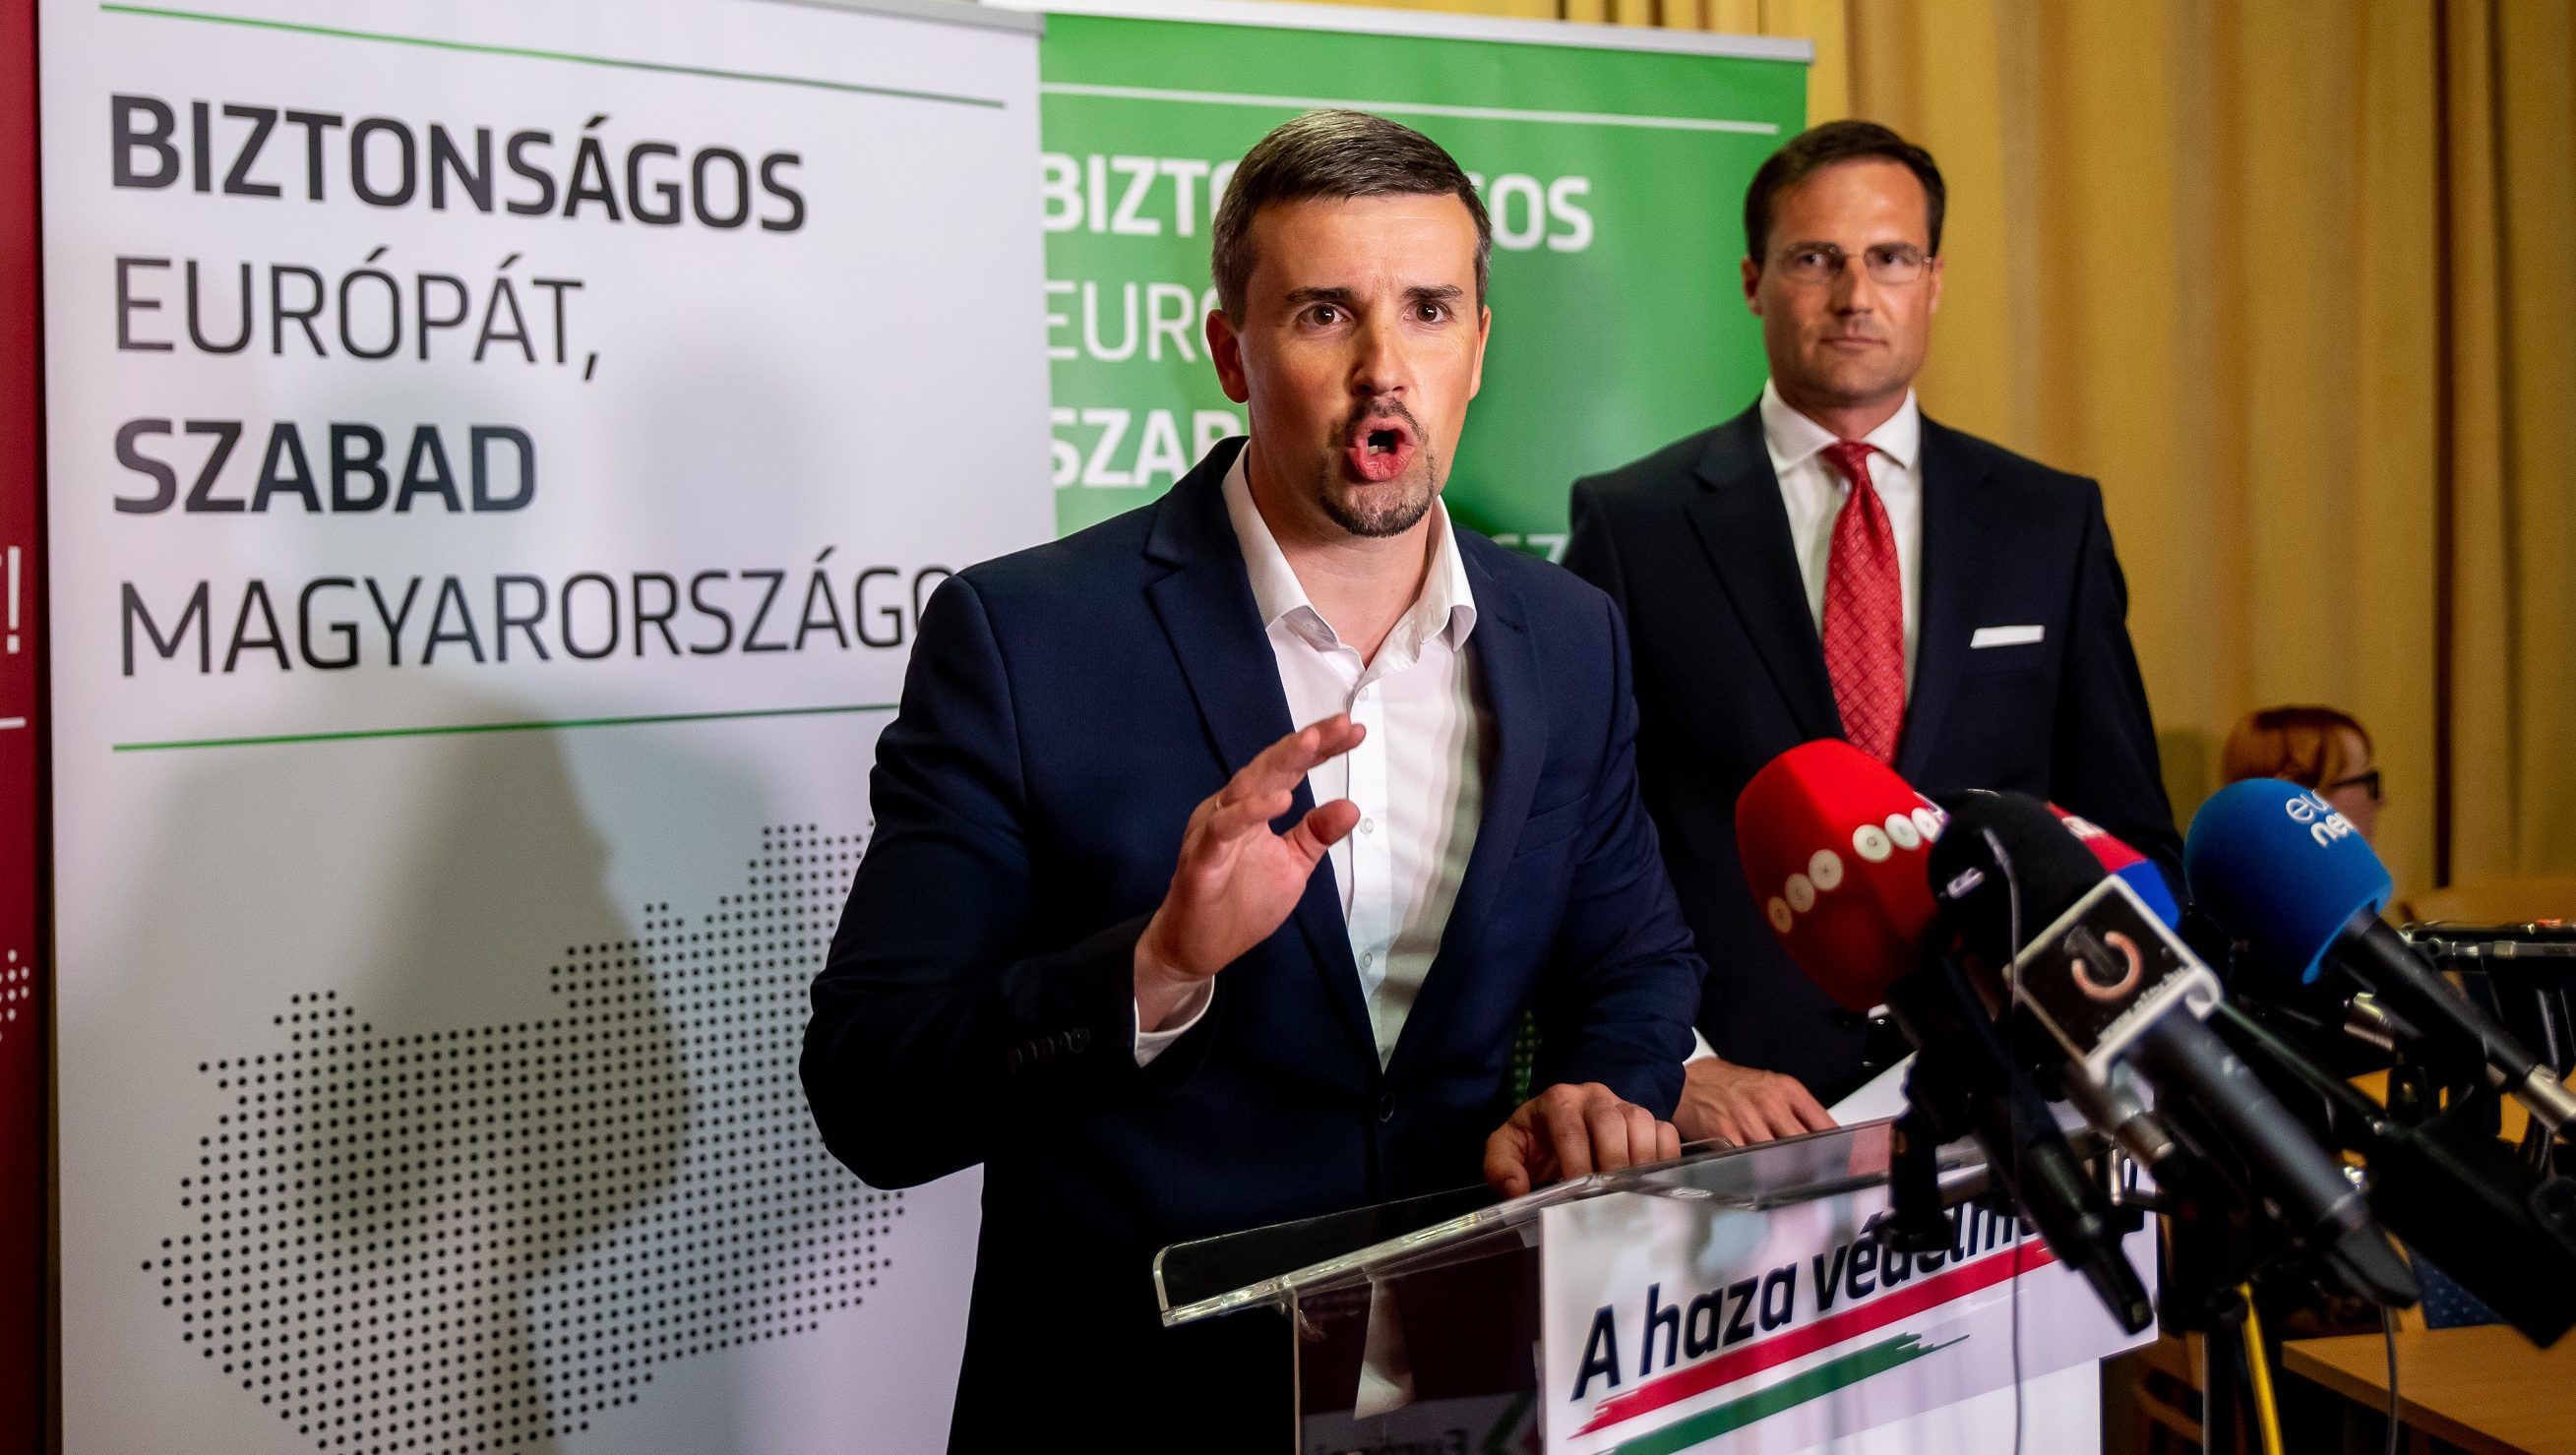 Nem lesz a Jobbik elnöke Jakab Péter